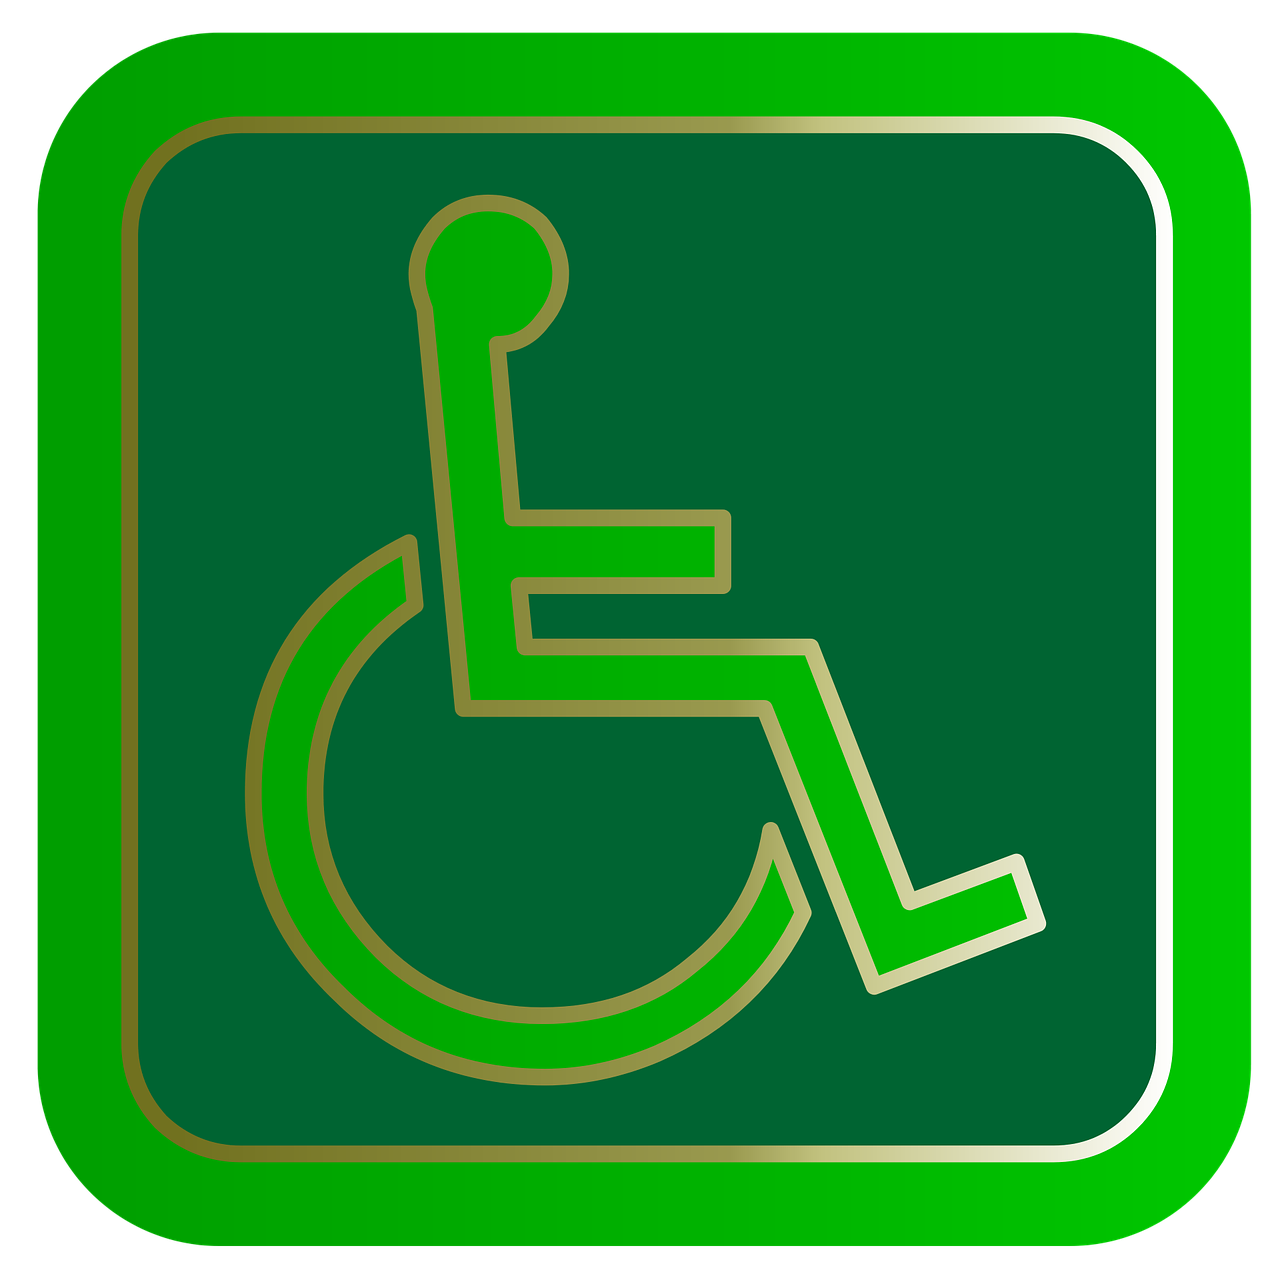 Prezzent De Zorgimkerij instellingen gehandicaptenzorg verstandelijk gehandicapten kliniek review